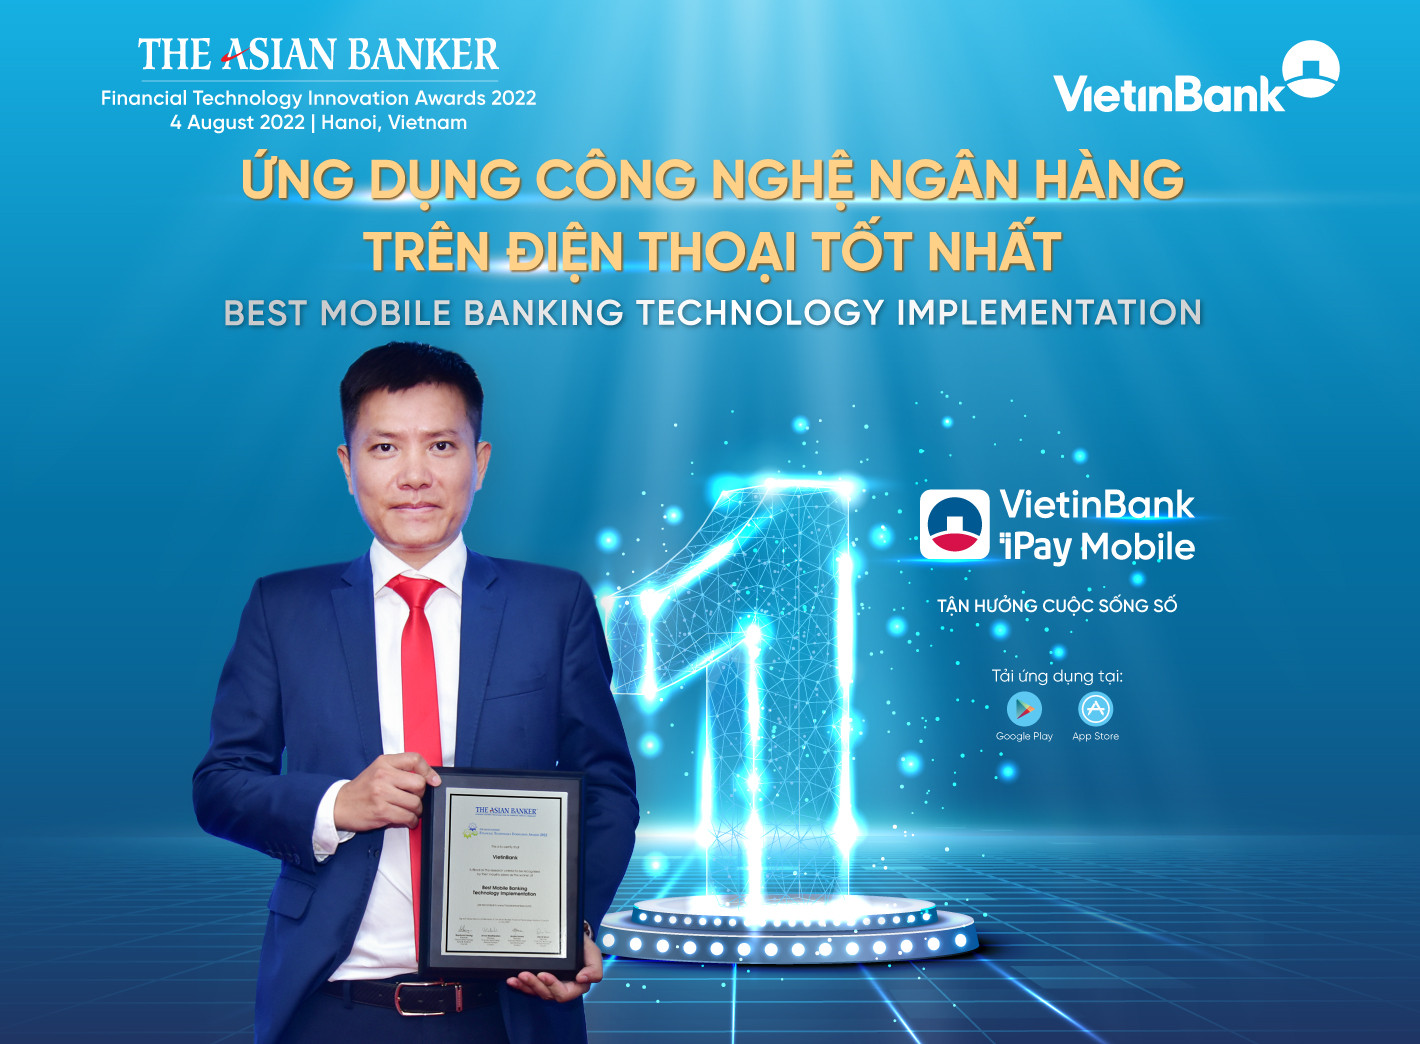 Ông Lê Anh Tuấn – Giám đốc Ban số hóa kênh phân phối bán lẻ đại diện VietinBank nhận Giải thưởng “Ứng dụng công nghệ ngân hàng trên điện thoại tốt nhất”.